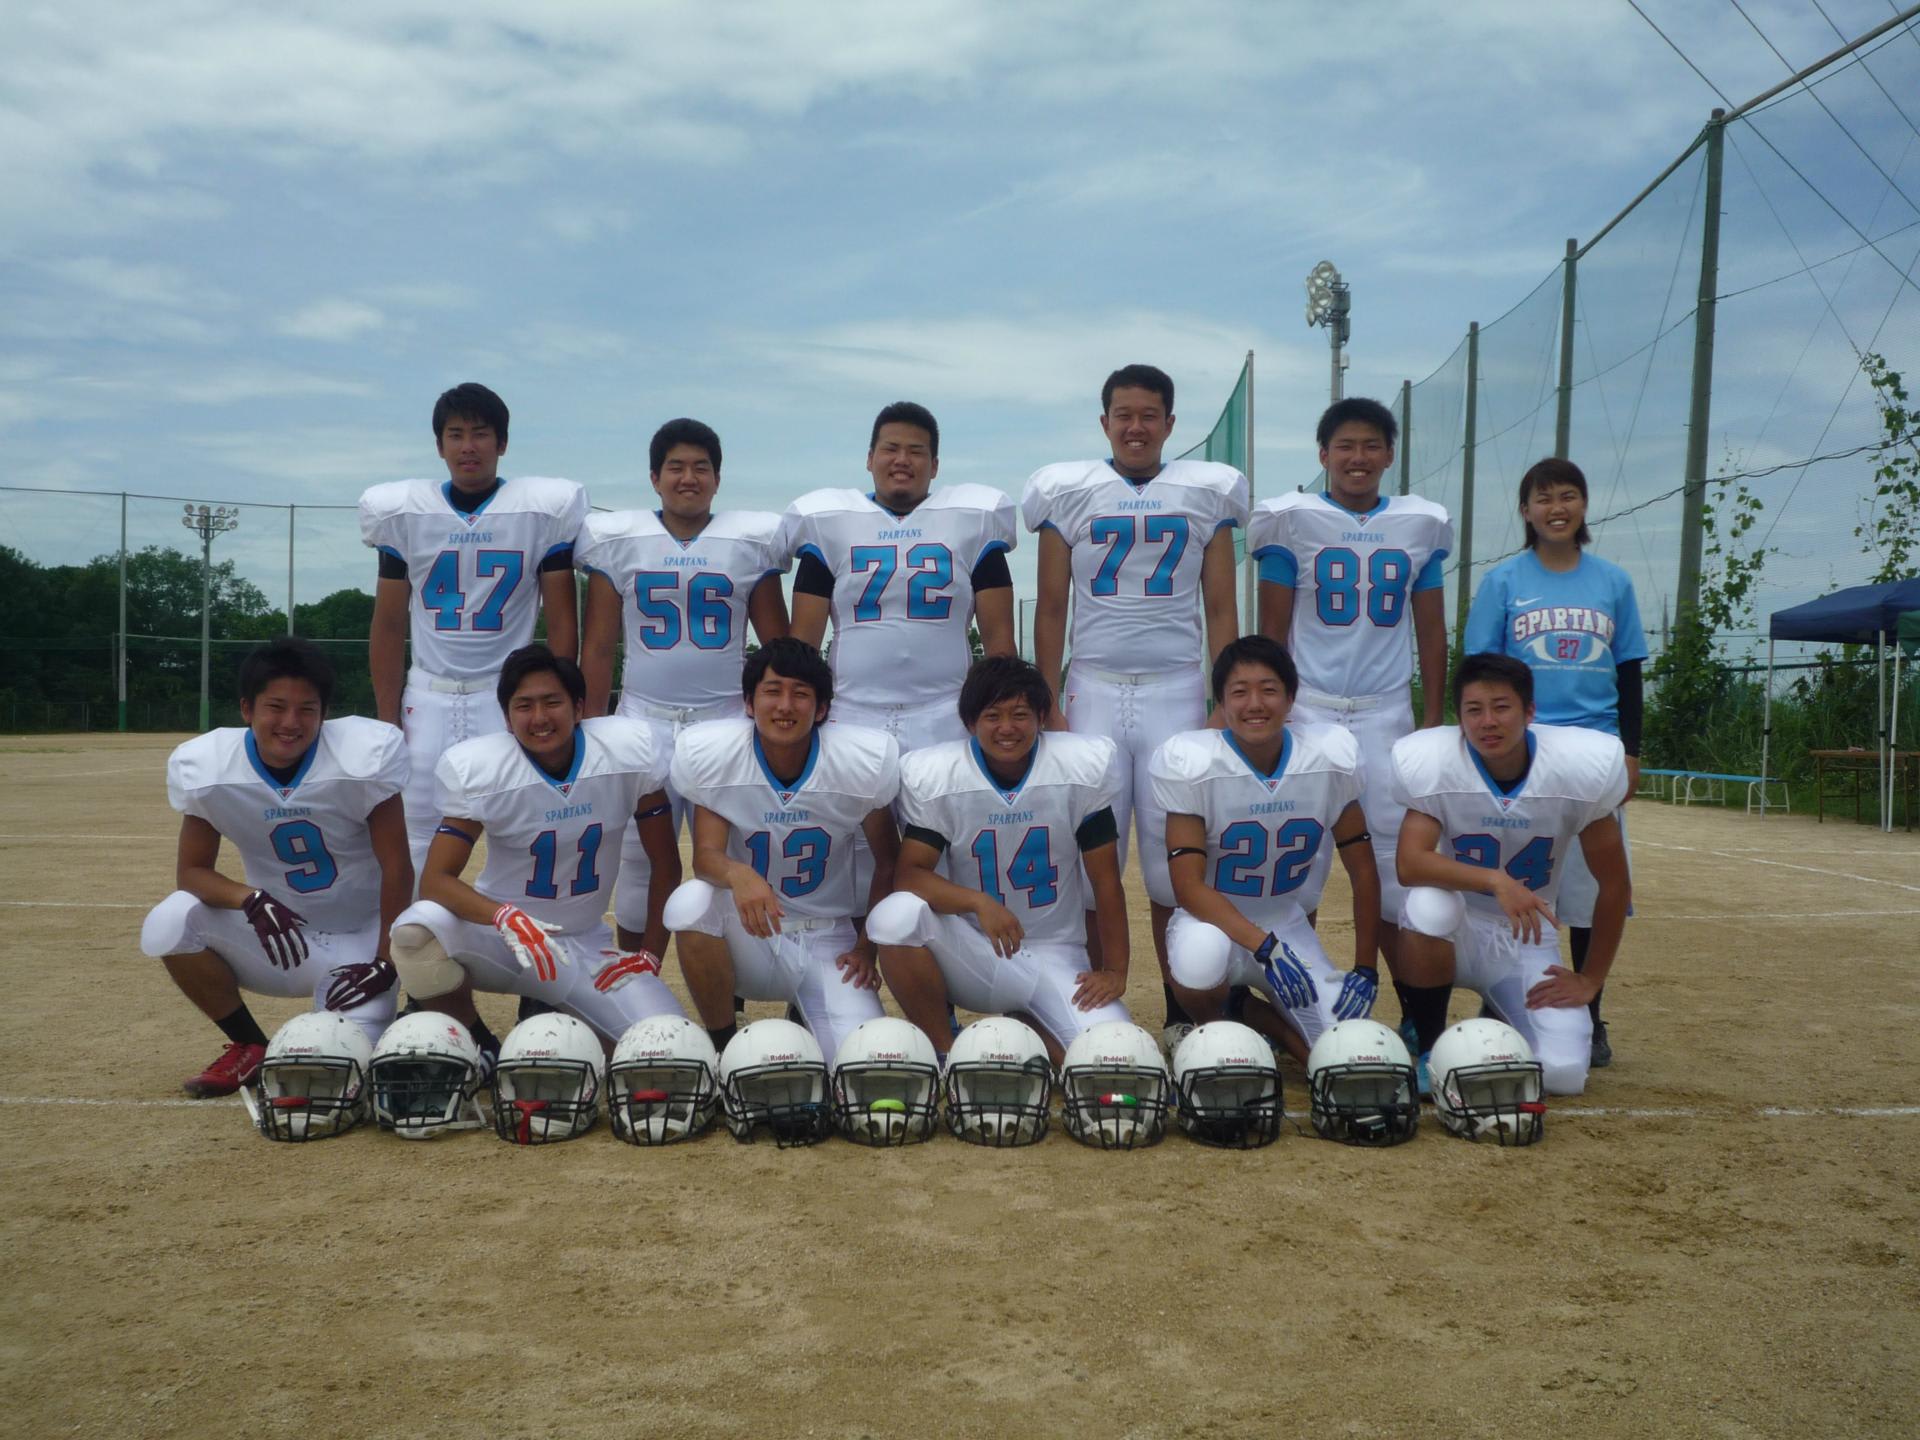 1回生紹介 We Are Spartans 大阪体育大学アメリカンフットボール部 15